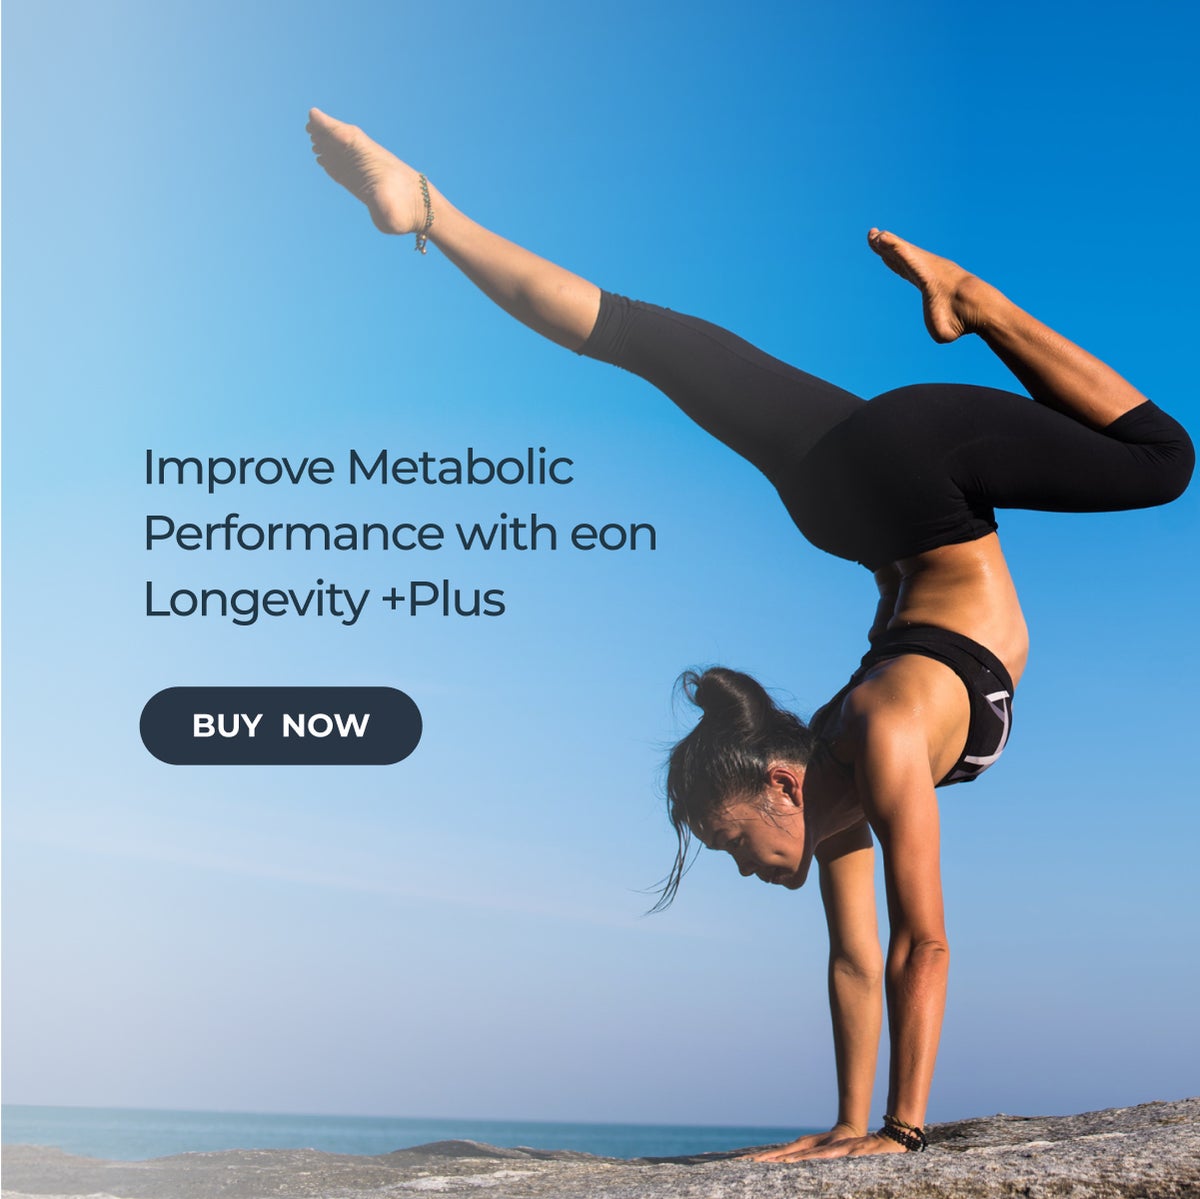 Improve Metabolic Performance with eon Longevity +Plus